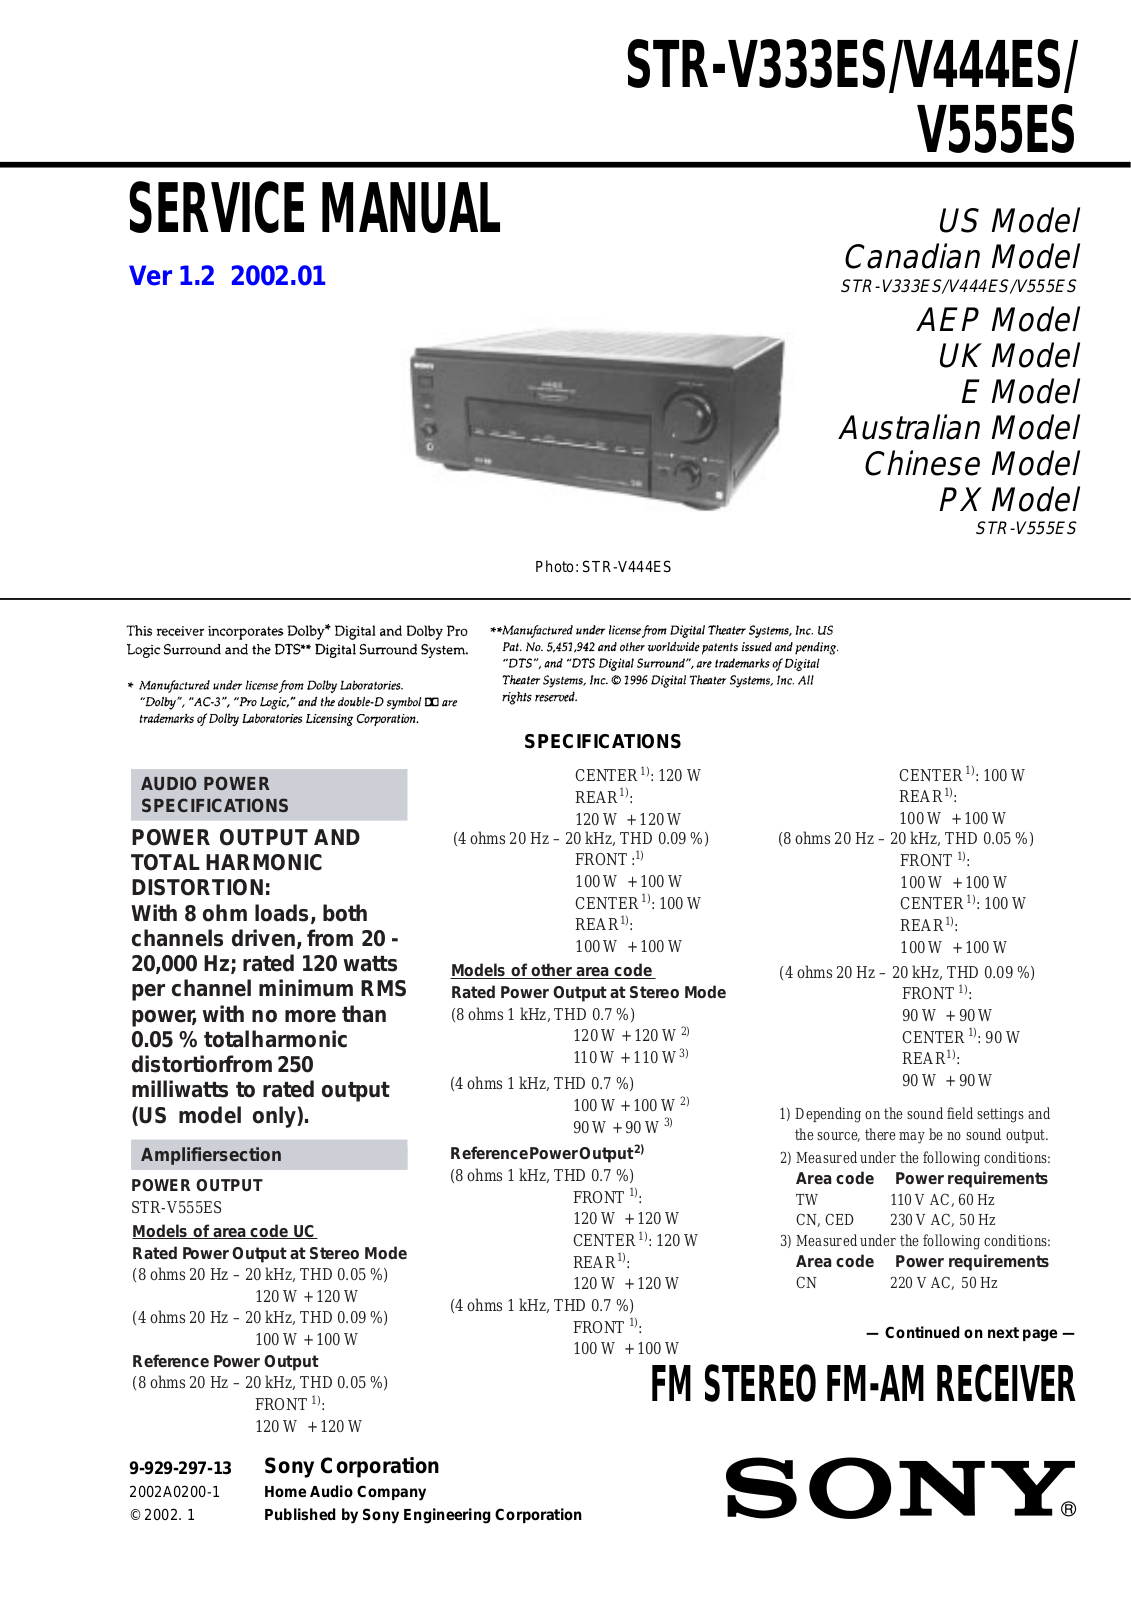 Sony STR-V333ES, STR-V444ES, STR-V555ES Service manual